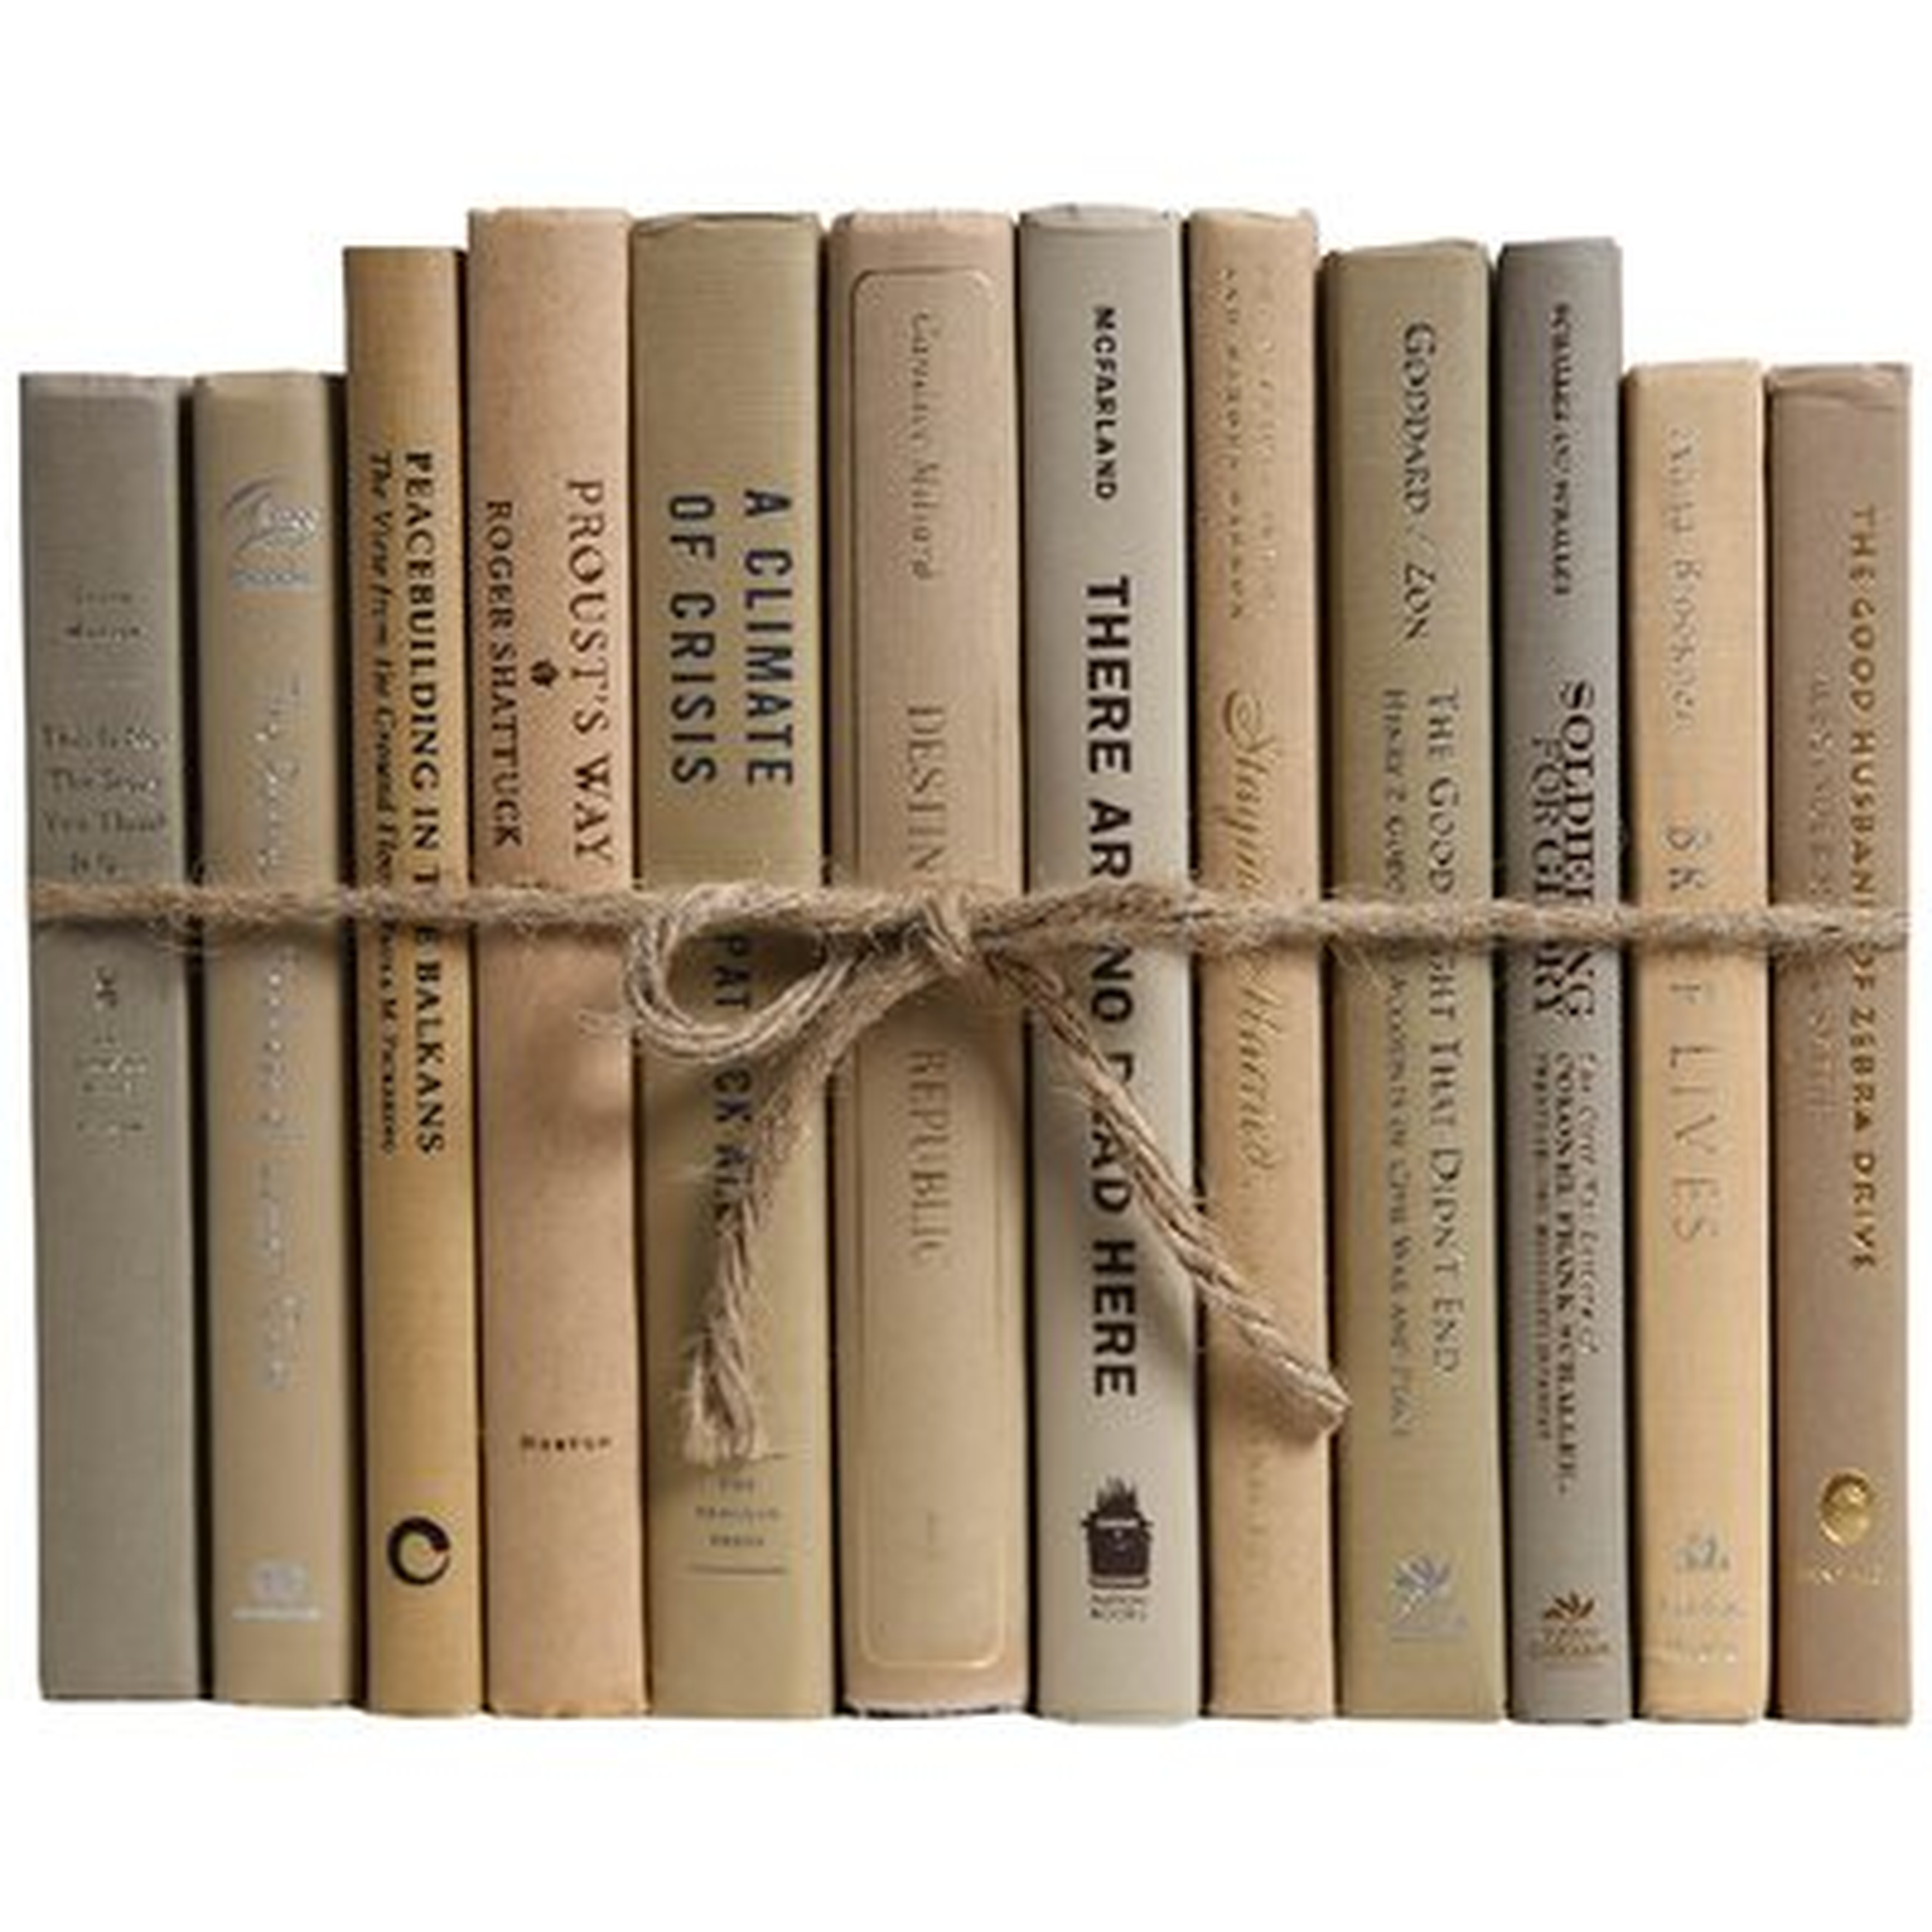 Driftwood Colorpak Authentic Decorative Book - Wayfair